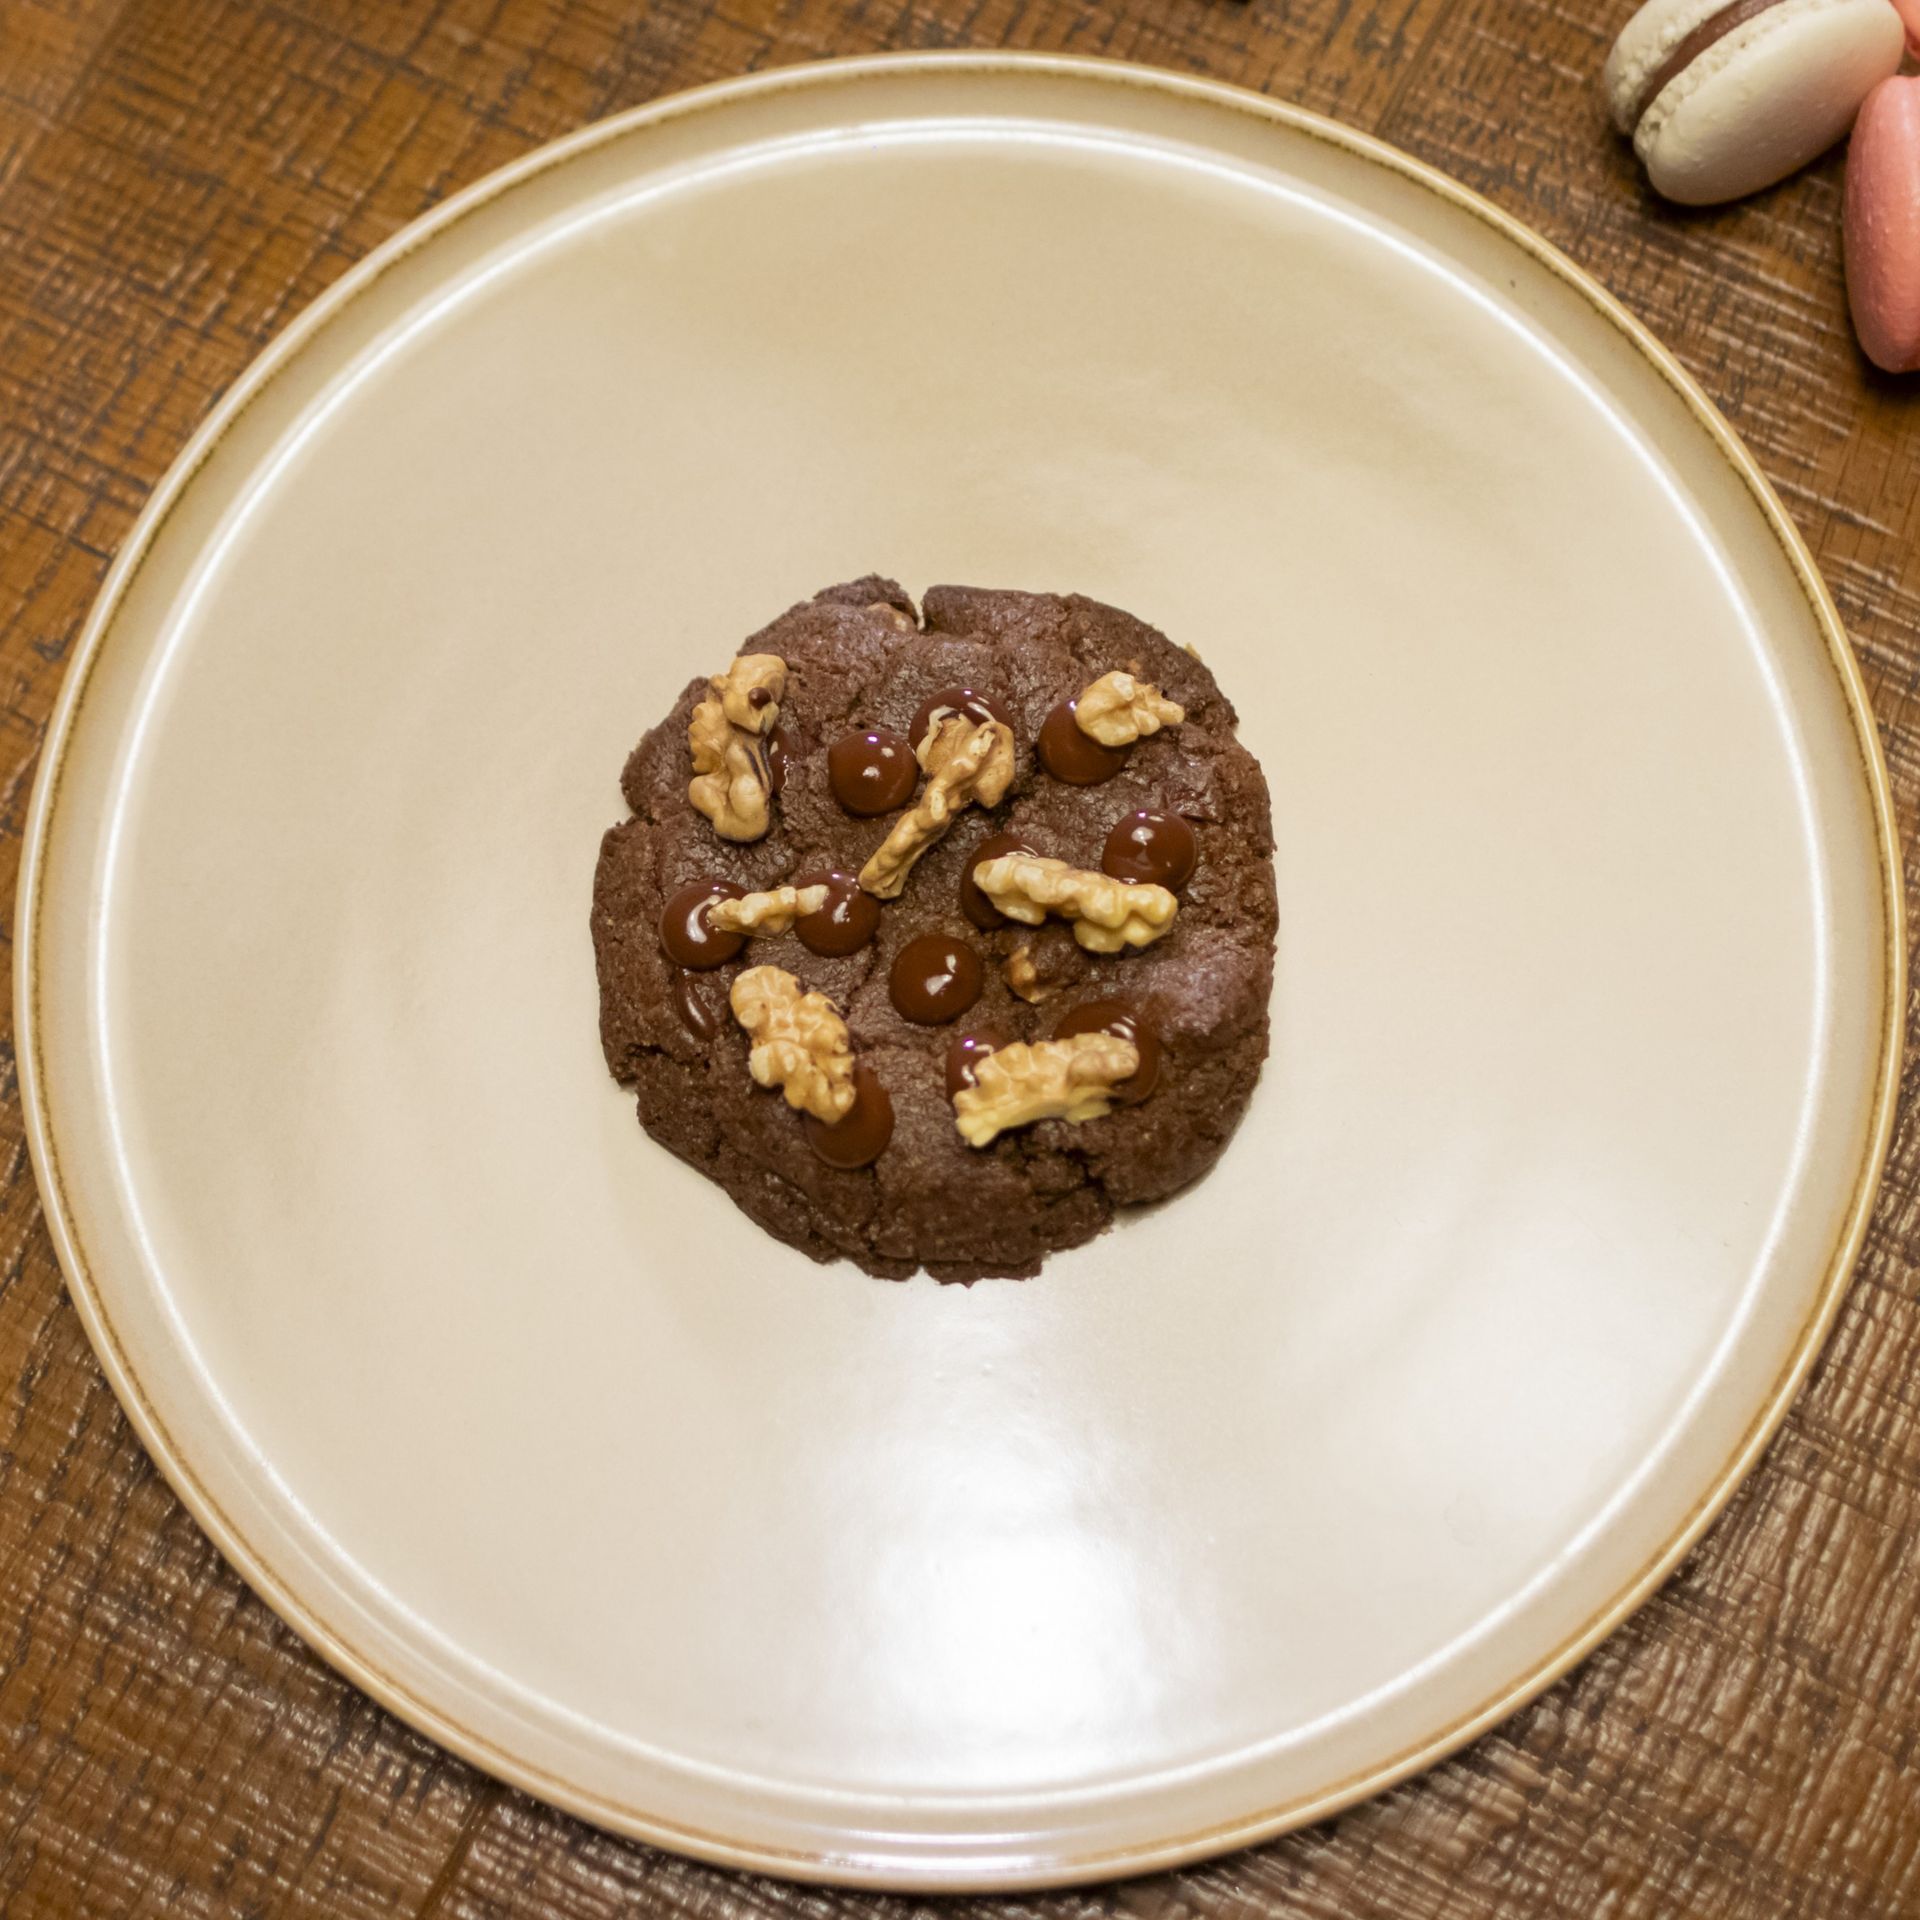 Una galleta de chocolate con nueces y chispas de chocolate en un plato blanco